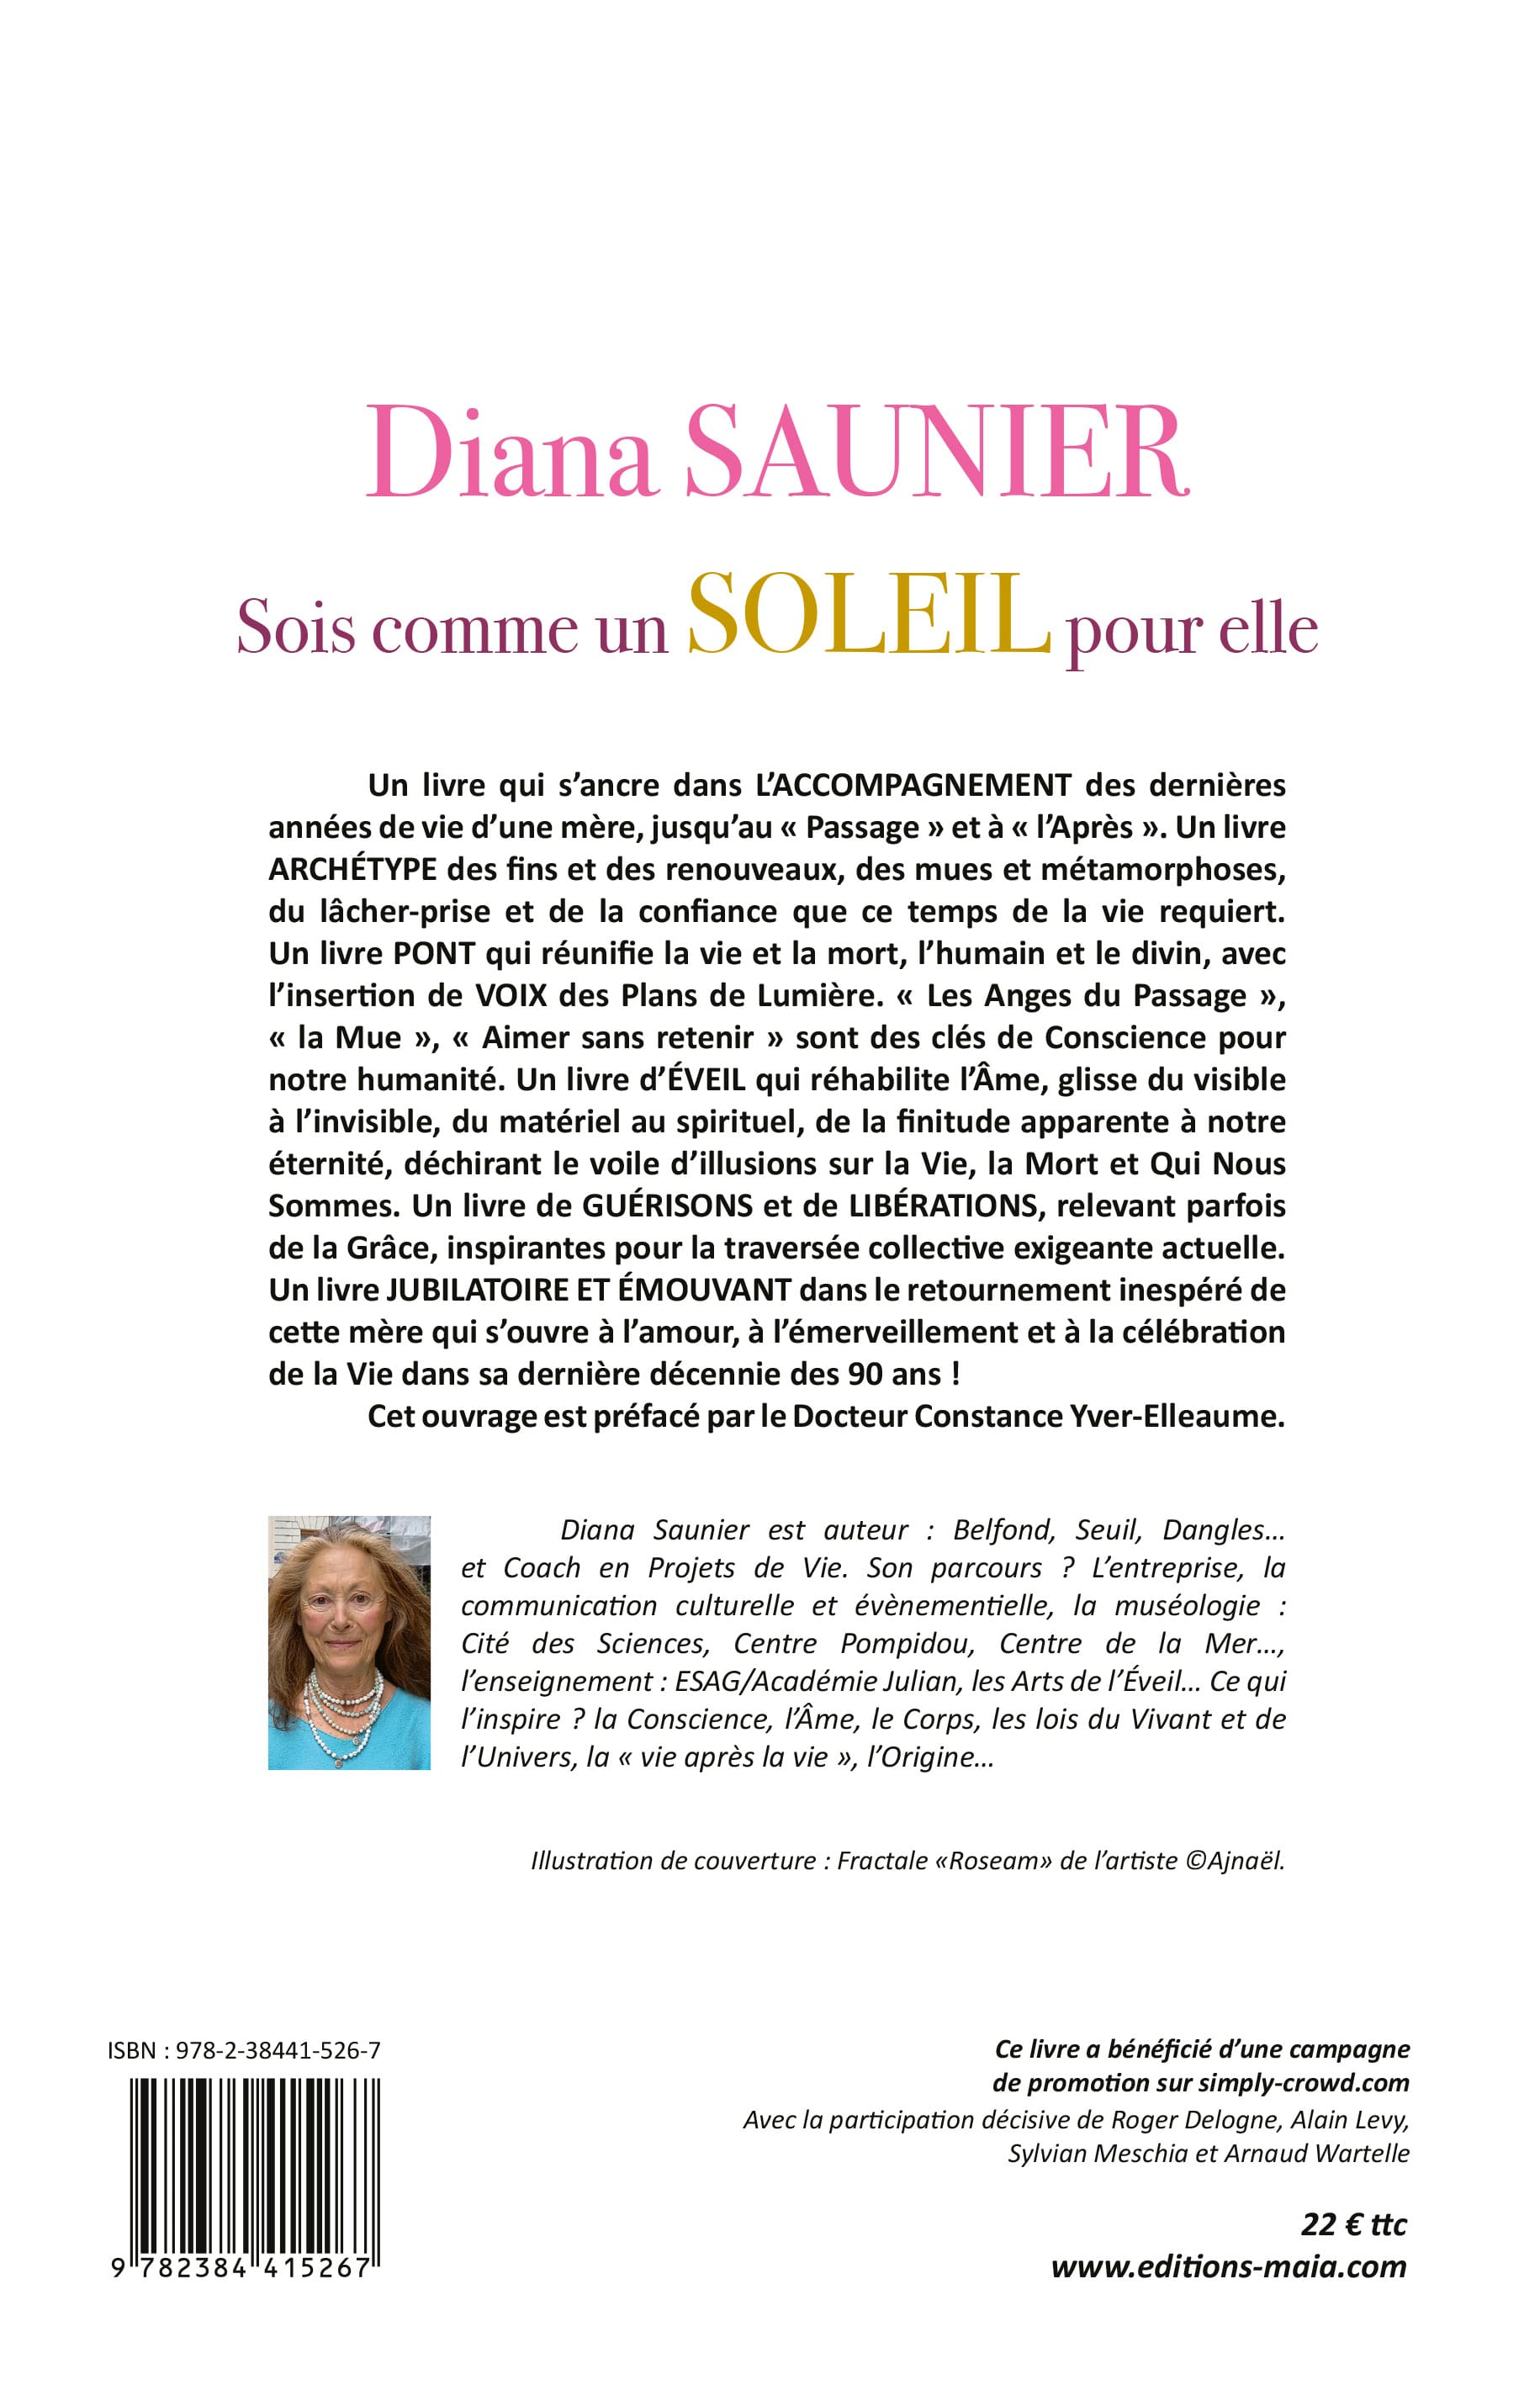 Diana SAUNIER - Sois comme un soleil pour elle 2